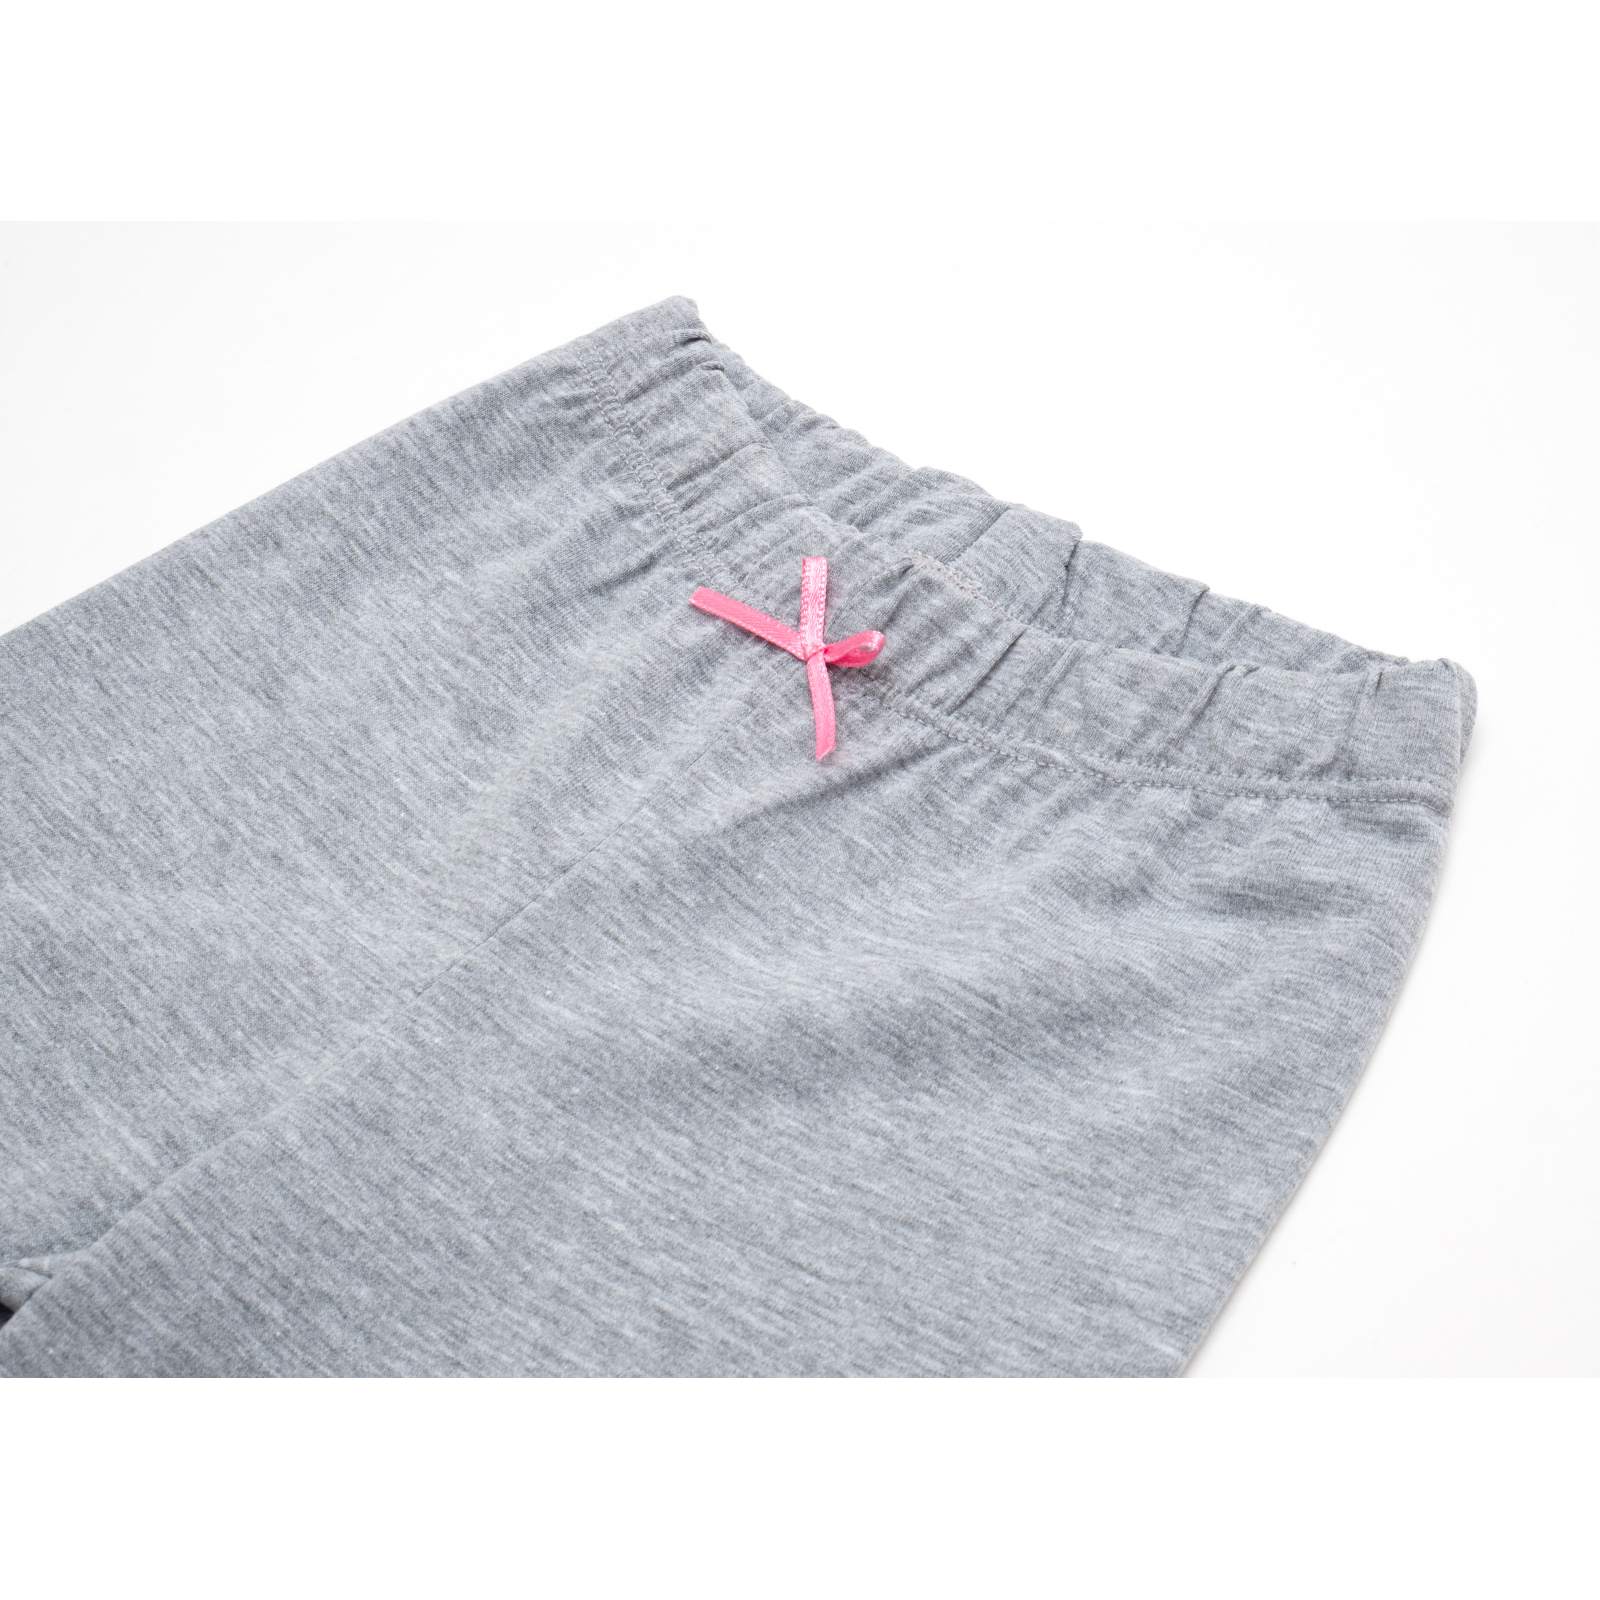 Пижама Matilda со звездочками (7167-92G-pink) изображение 8